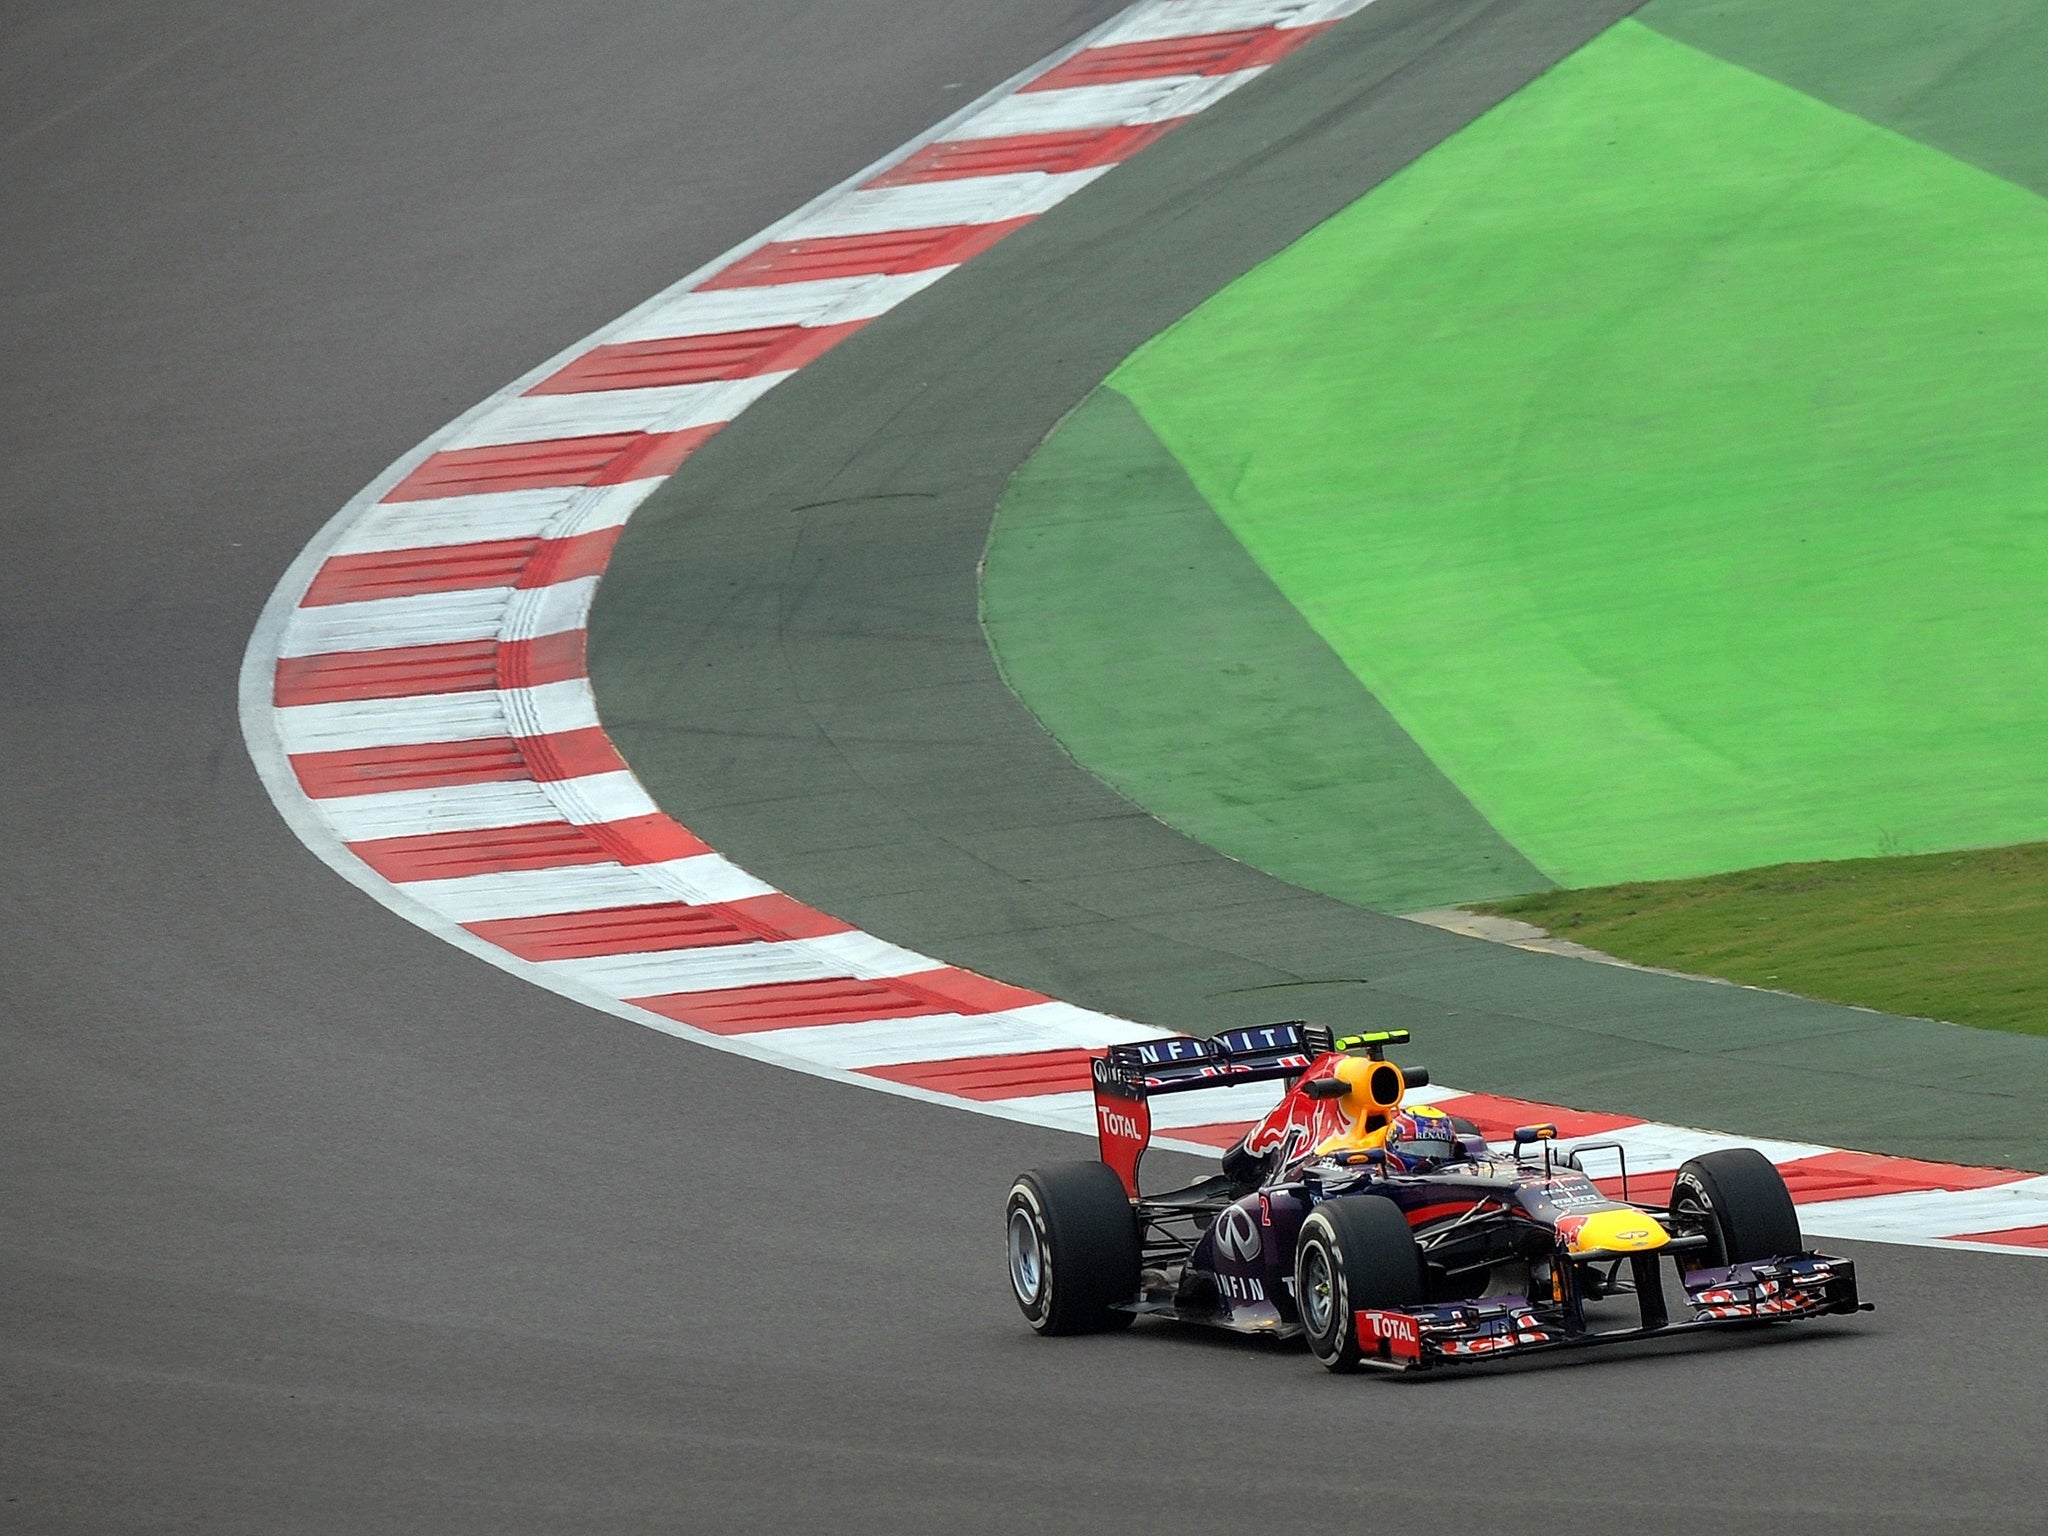 Sebastian Vettel during practice for the Indian Grand Prix